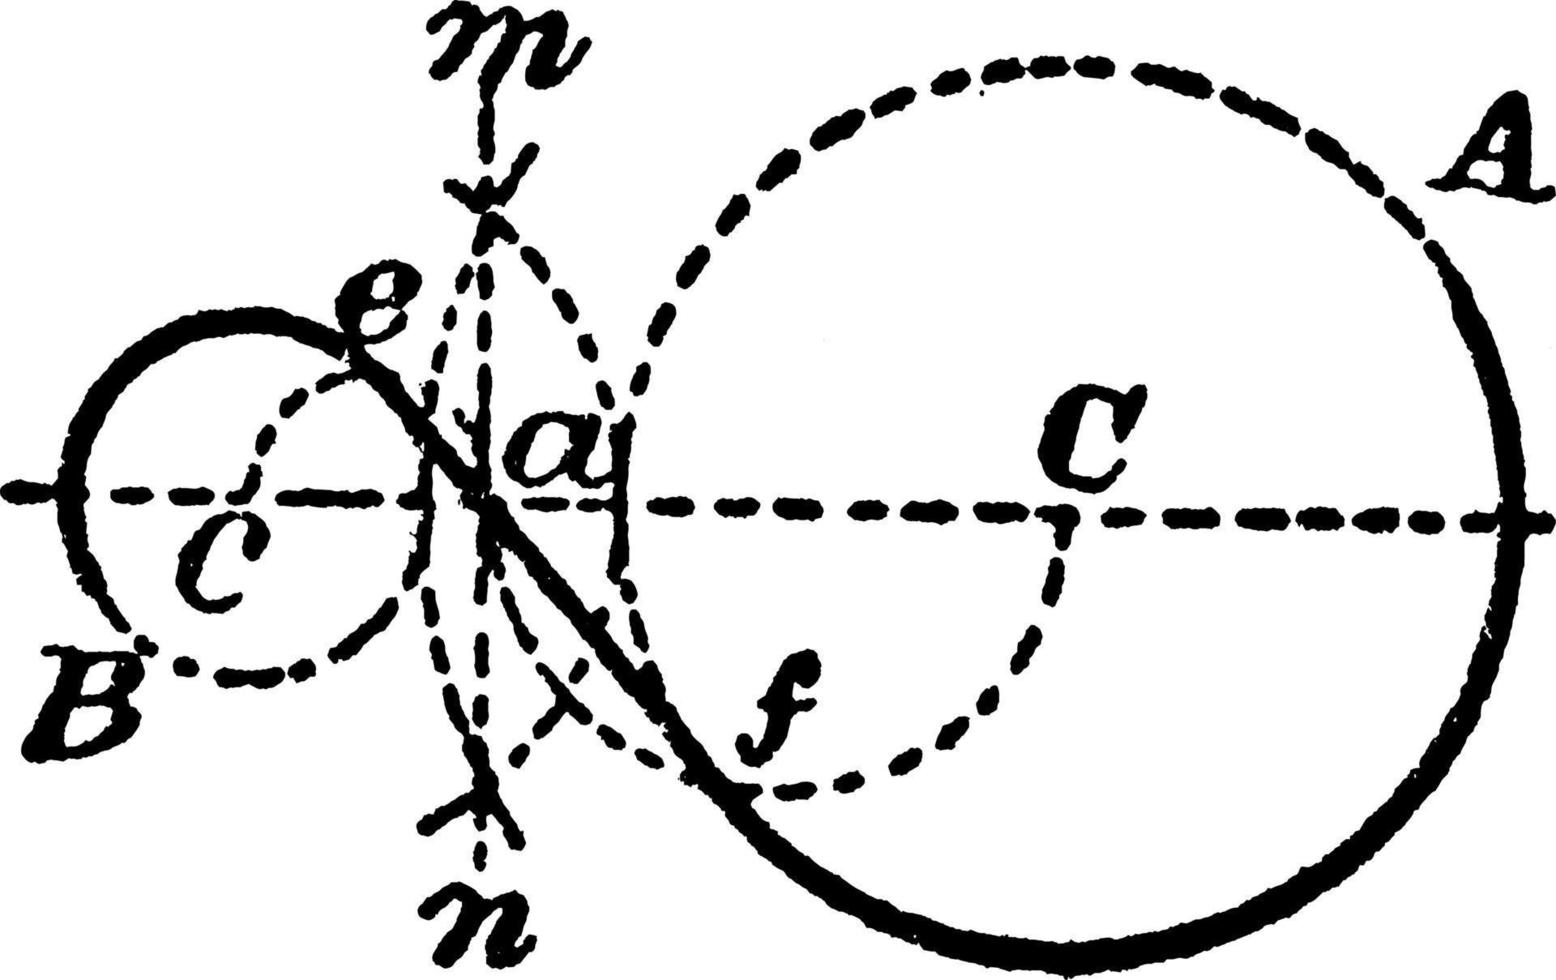 construcción de tangente entre 2 círculos, ilustración antigua. vector